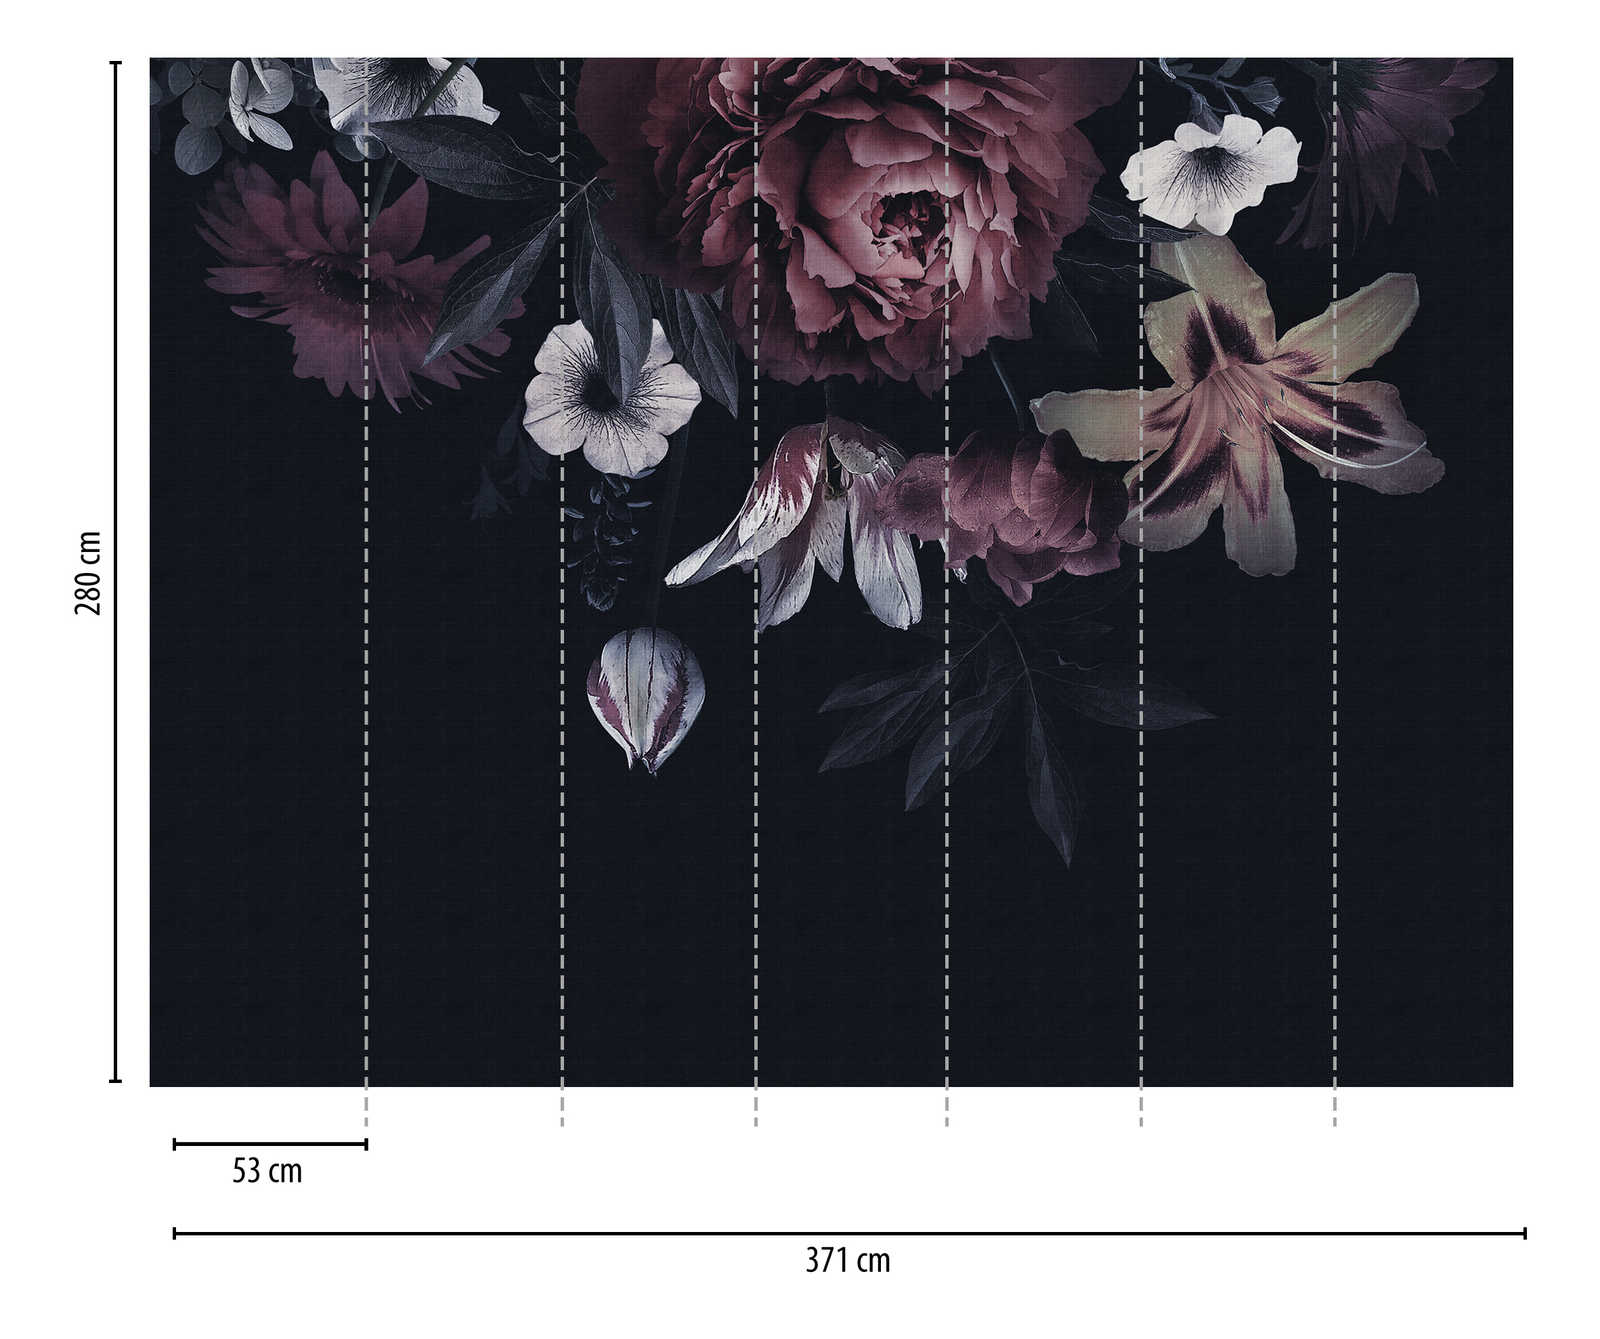             Sfondi novità | motivo scuro carta da parati fiori in stile pittura
        